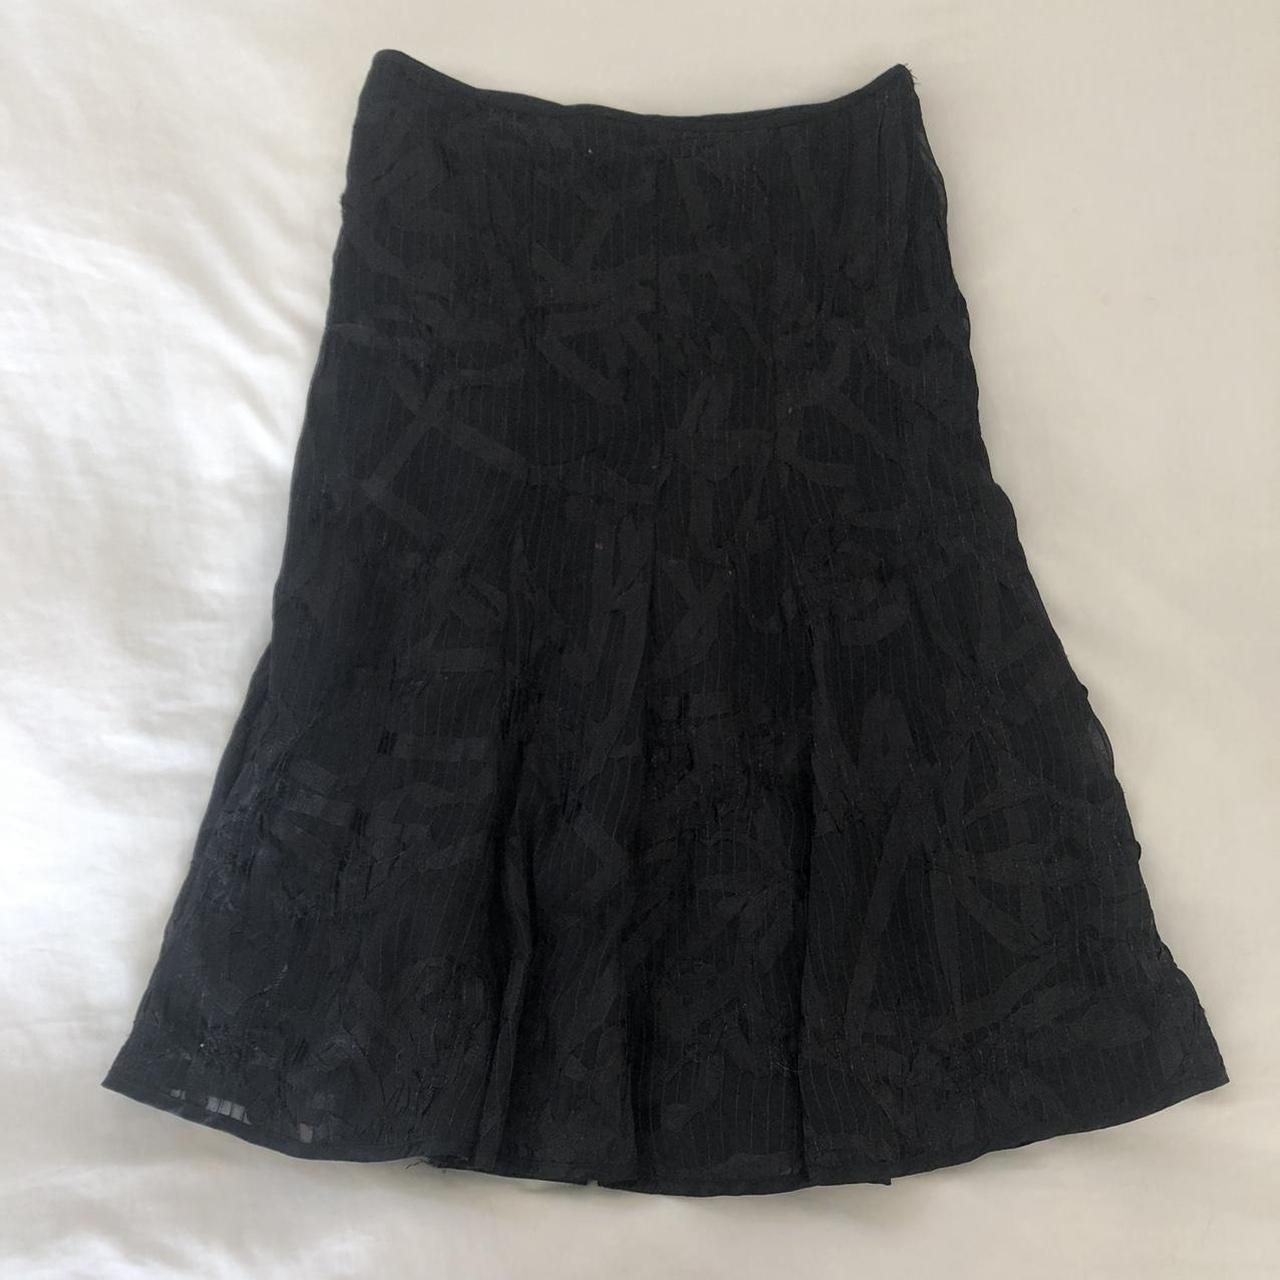 principles black patterned midi skirt vintage and... - Depop